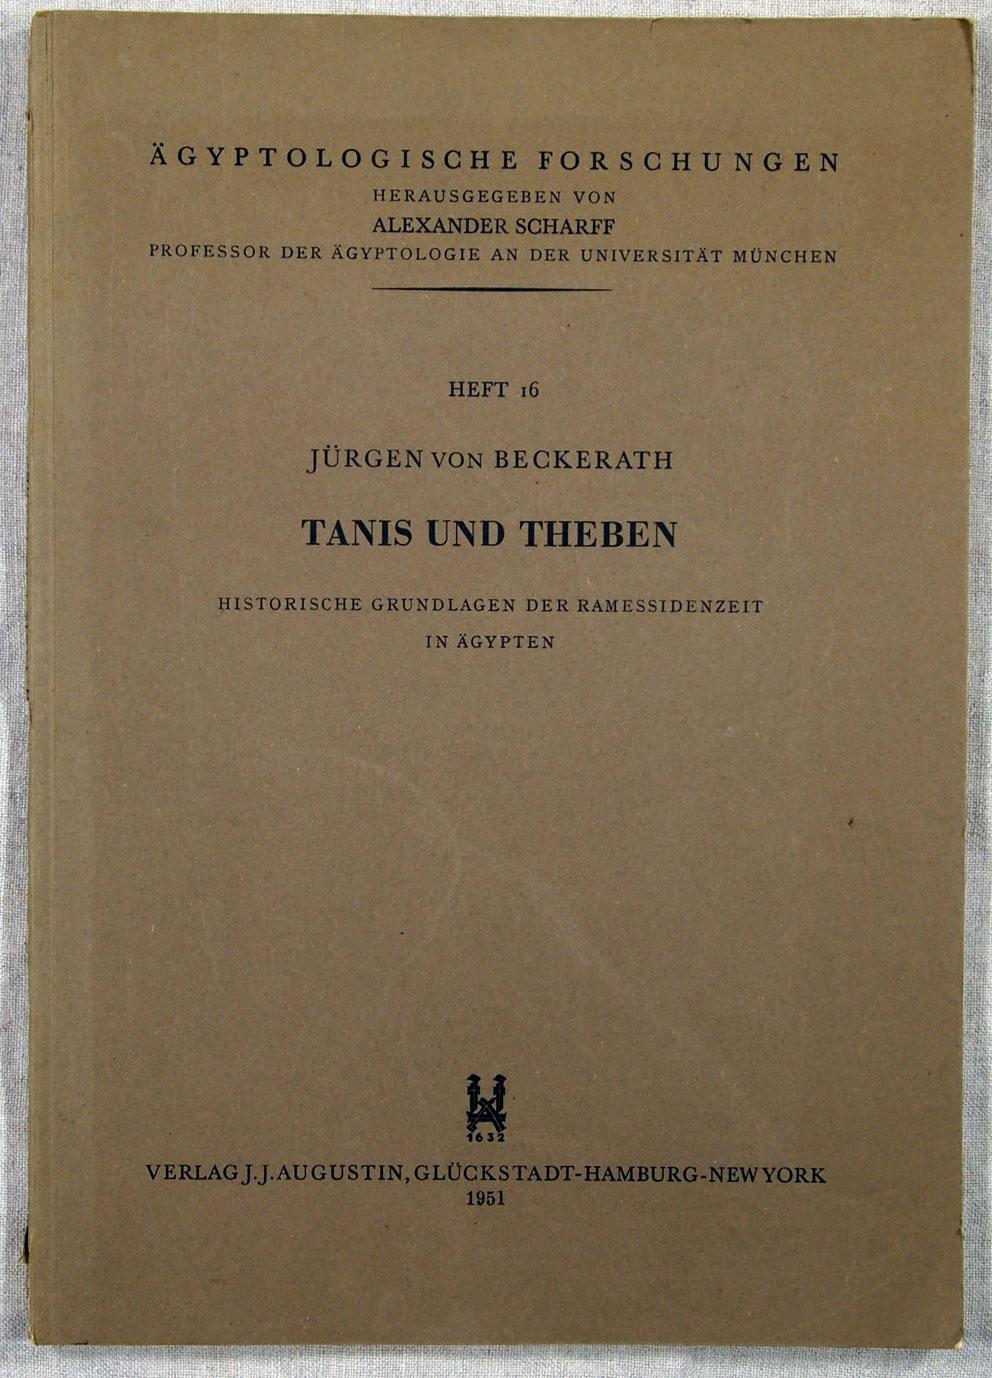 TANIS UND THEBEN Heft 16 Historische Grundlagen der Ramessideneit in Agypten, Agyptologische Forschungen - von Beckerath, Jurgen